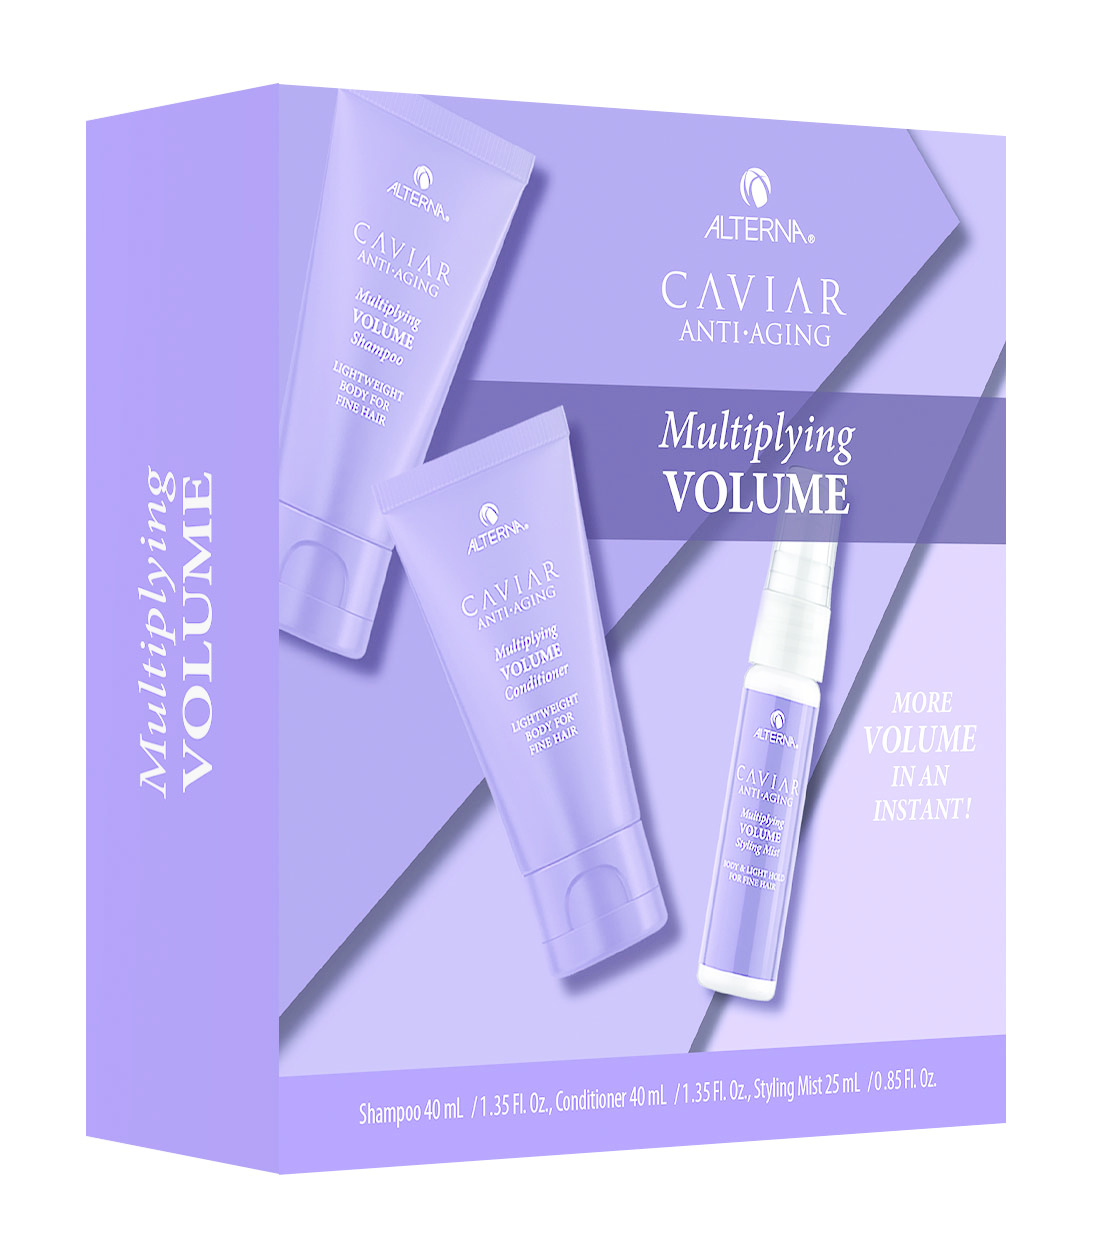 Alterna - Caviar Anti-Aging Multiplying Volume Kit - Dárková sada vlasové péče